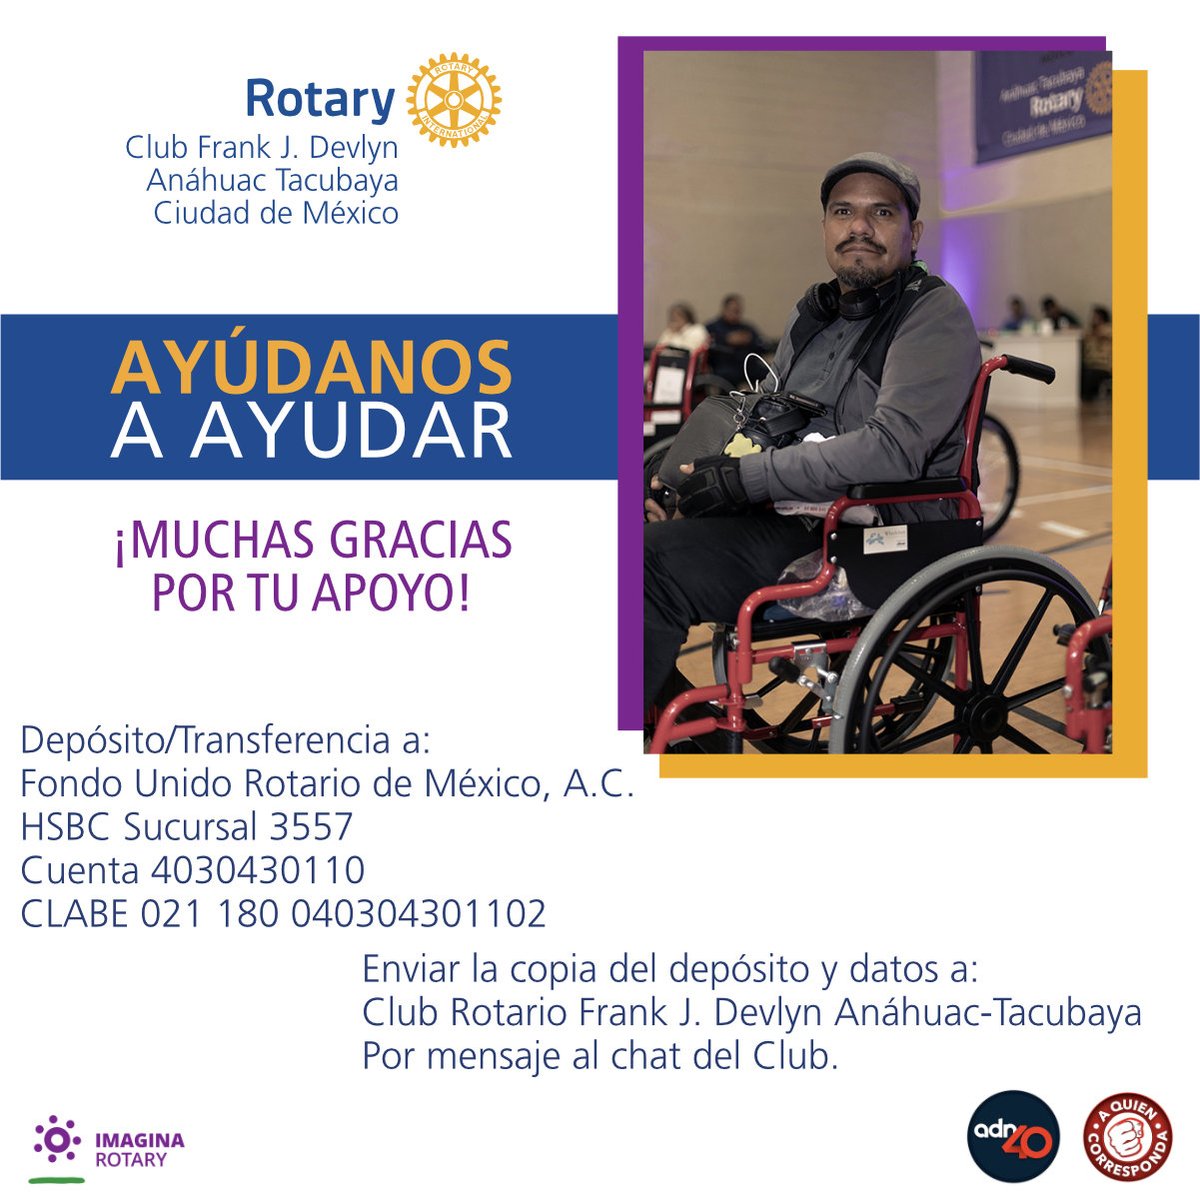 Tenemos el proyecto de distribuir en México 100 sillas de ruedas. Para la adquisición y su entrega, nos dirigimos a todos los que nos puedan ayudar para conseguir donativos de $1,800 por cada silla. ¡Contamos contigo!

#SomosRotary #ClubFrankDevlynAnahuacTacubaya #Ayudanosaayudar